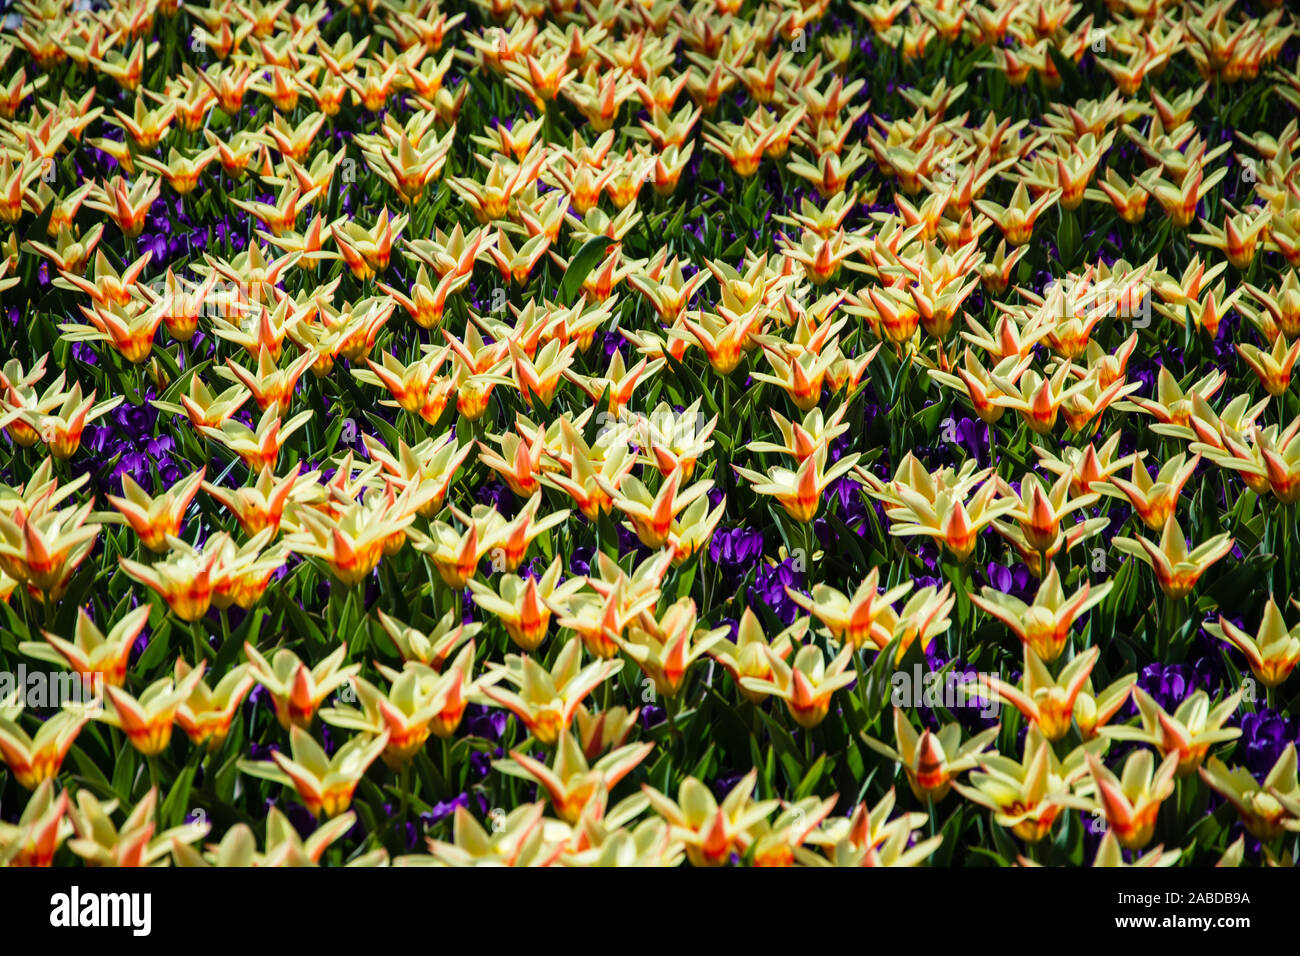 Die Tulpen bilden eine Pflanzengattung in der Familie der Liliengewächse. Die etwa 150 Arten sind in Nordafrika und über Europa bis Zentralasien verbr Stock Photo